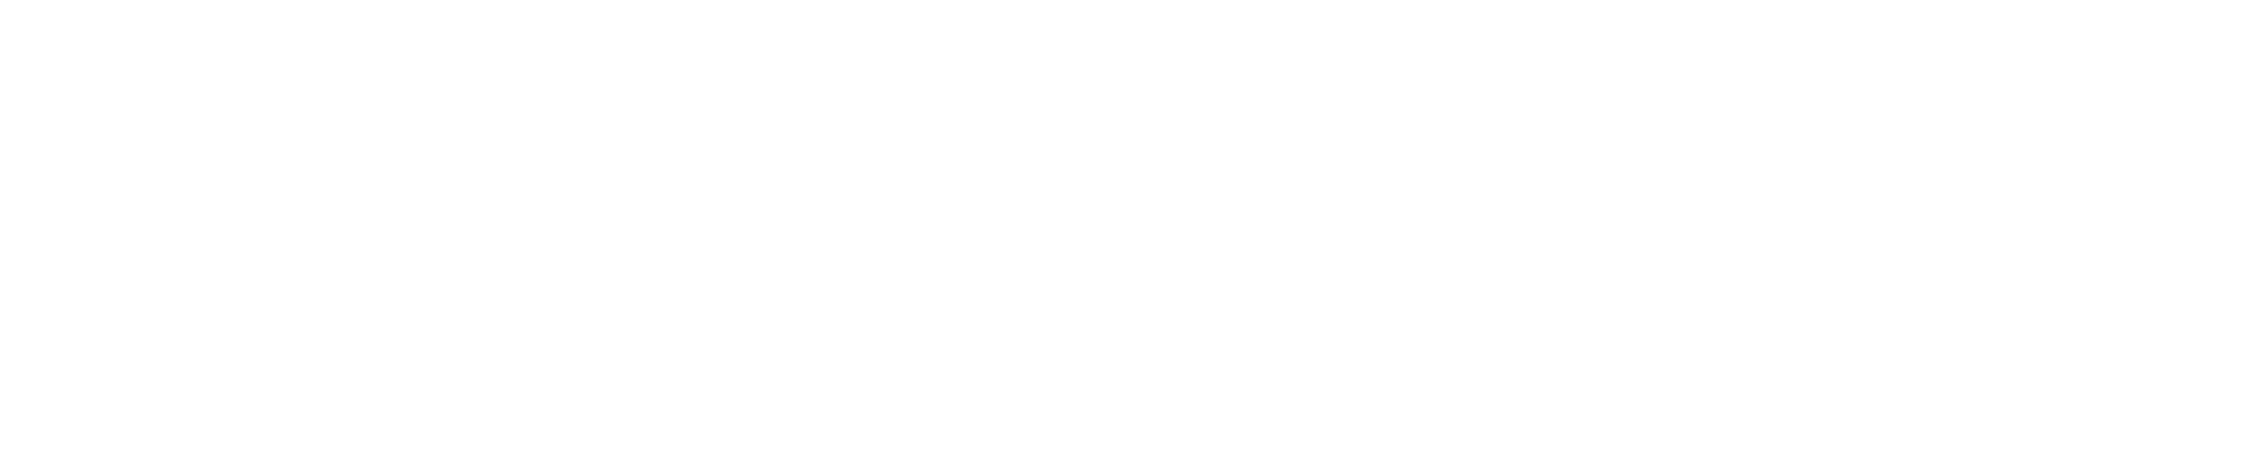 Leon Ready logo